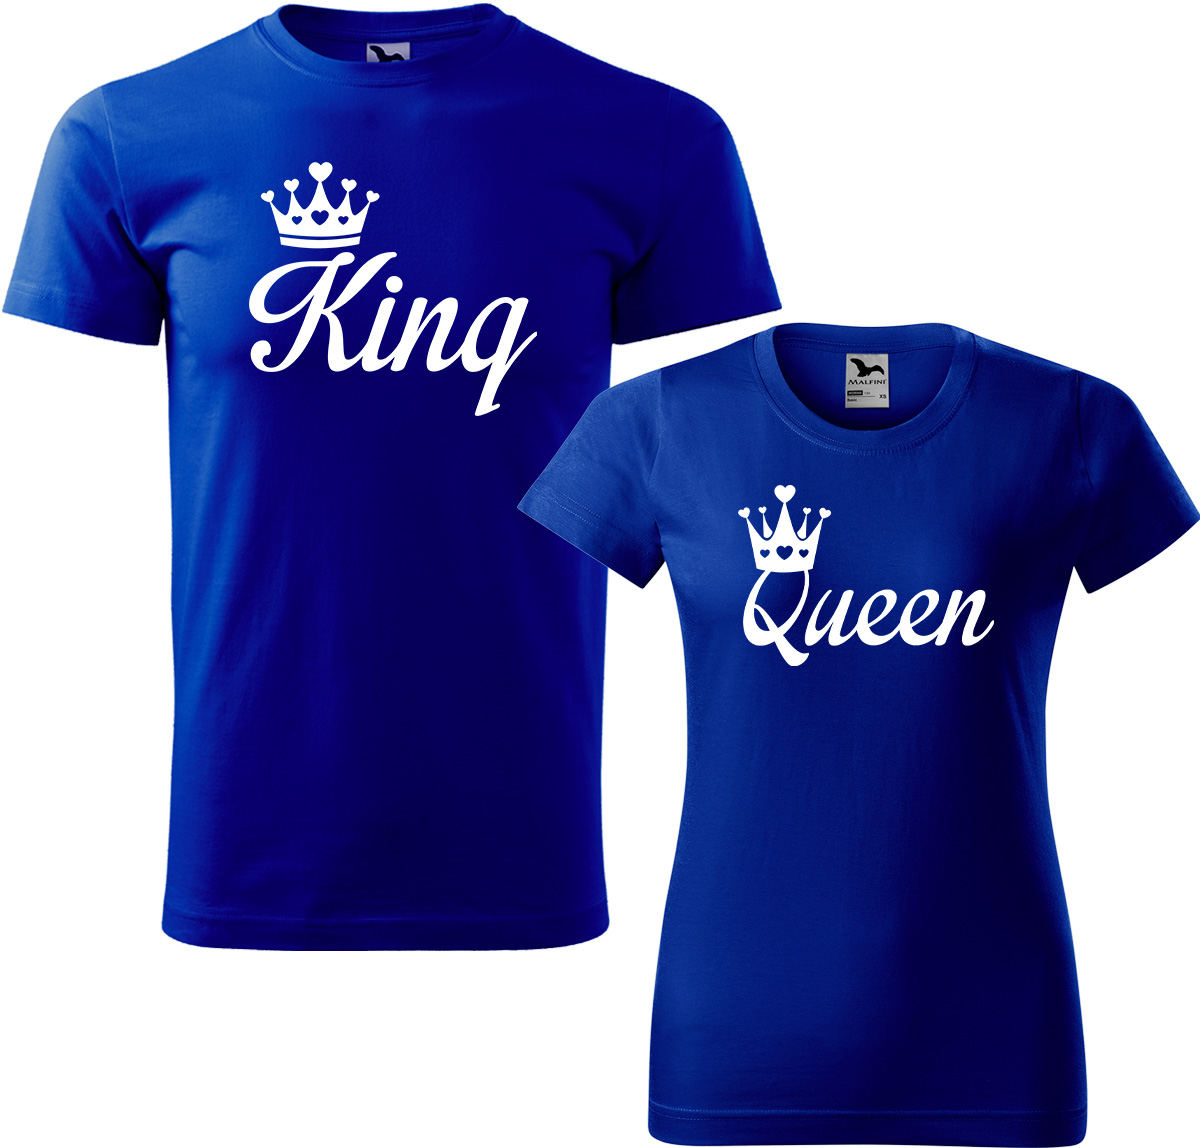 Trička pro páry - King a queen Barva: Královská modrá (05), Velikost dámské tričko: L, Velikost pánské tričko: L